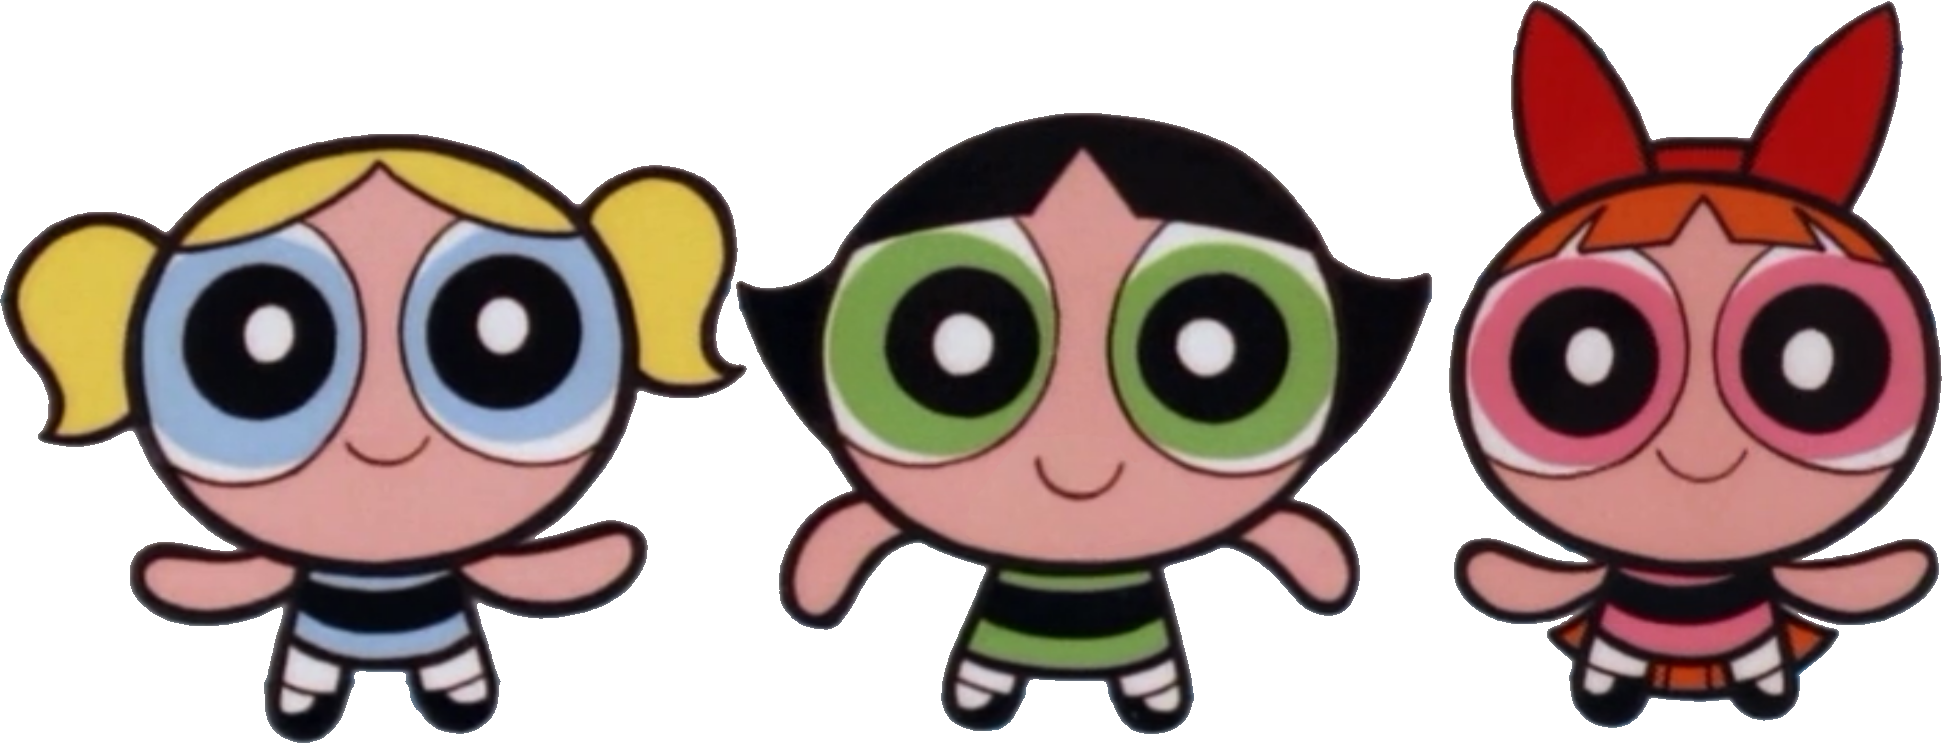 Powerpuff Girls Z Cartoon Network Wiki - Powerpuff Girls Early 2000 -  (1942x749) Png Clipart Download